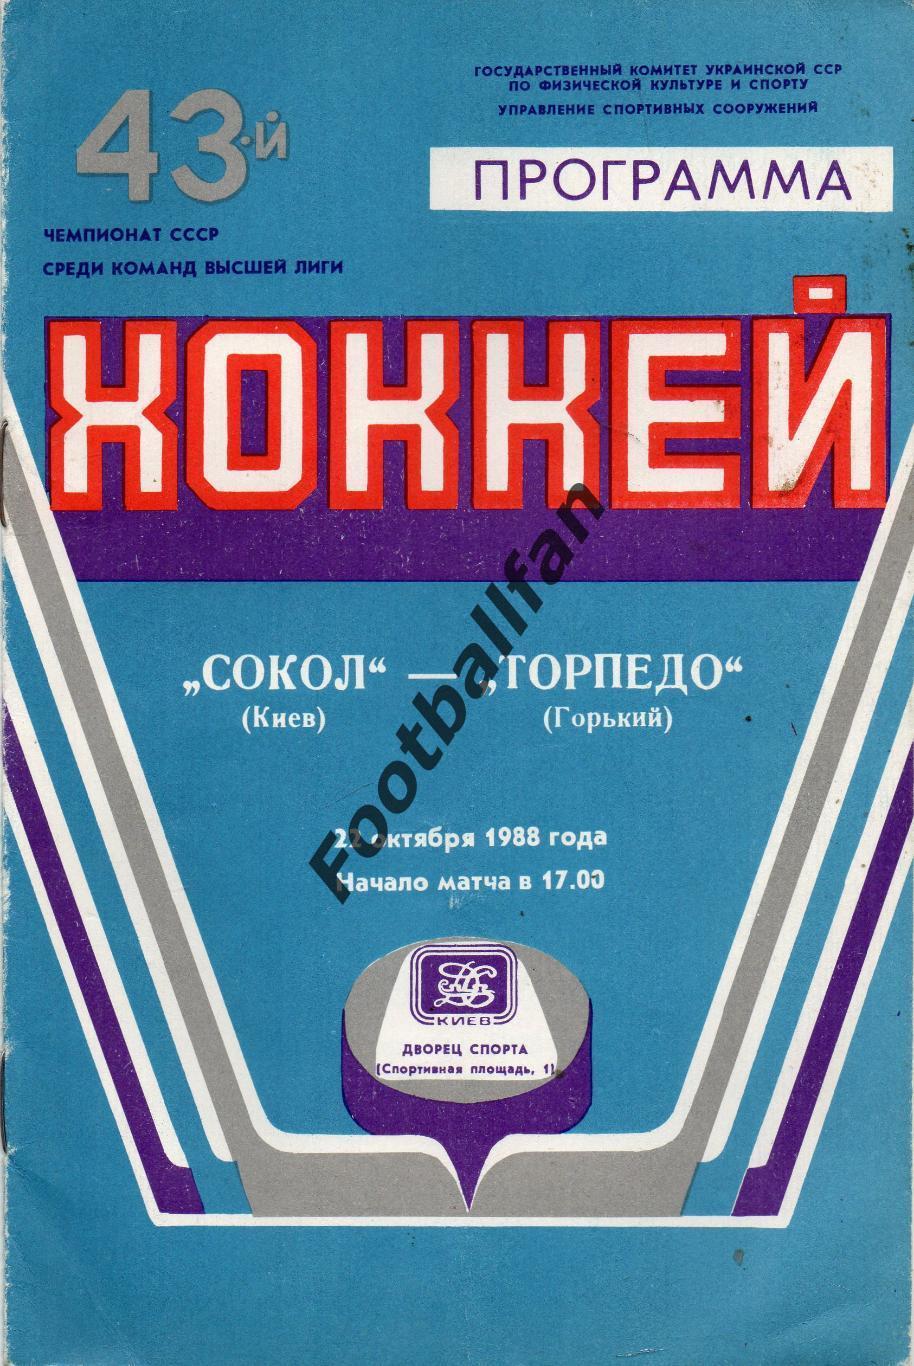 Сокол Киев - Торпедо Горький 22.10.1988